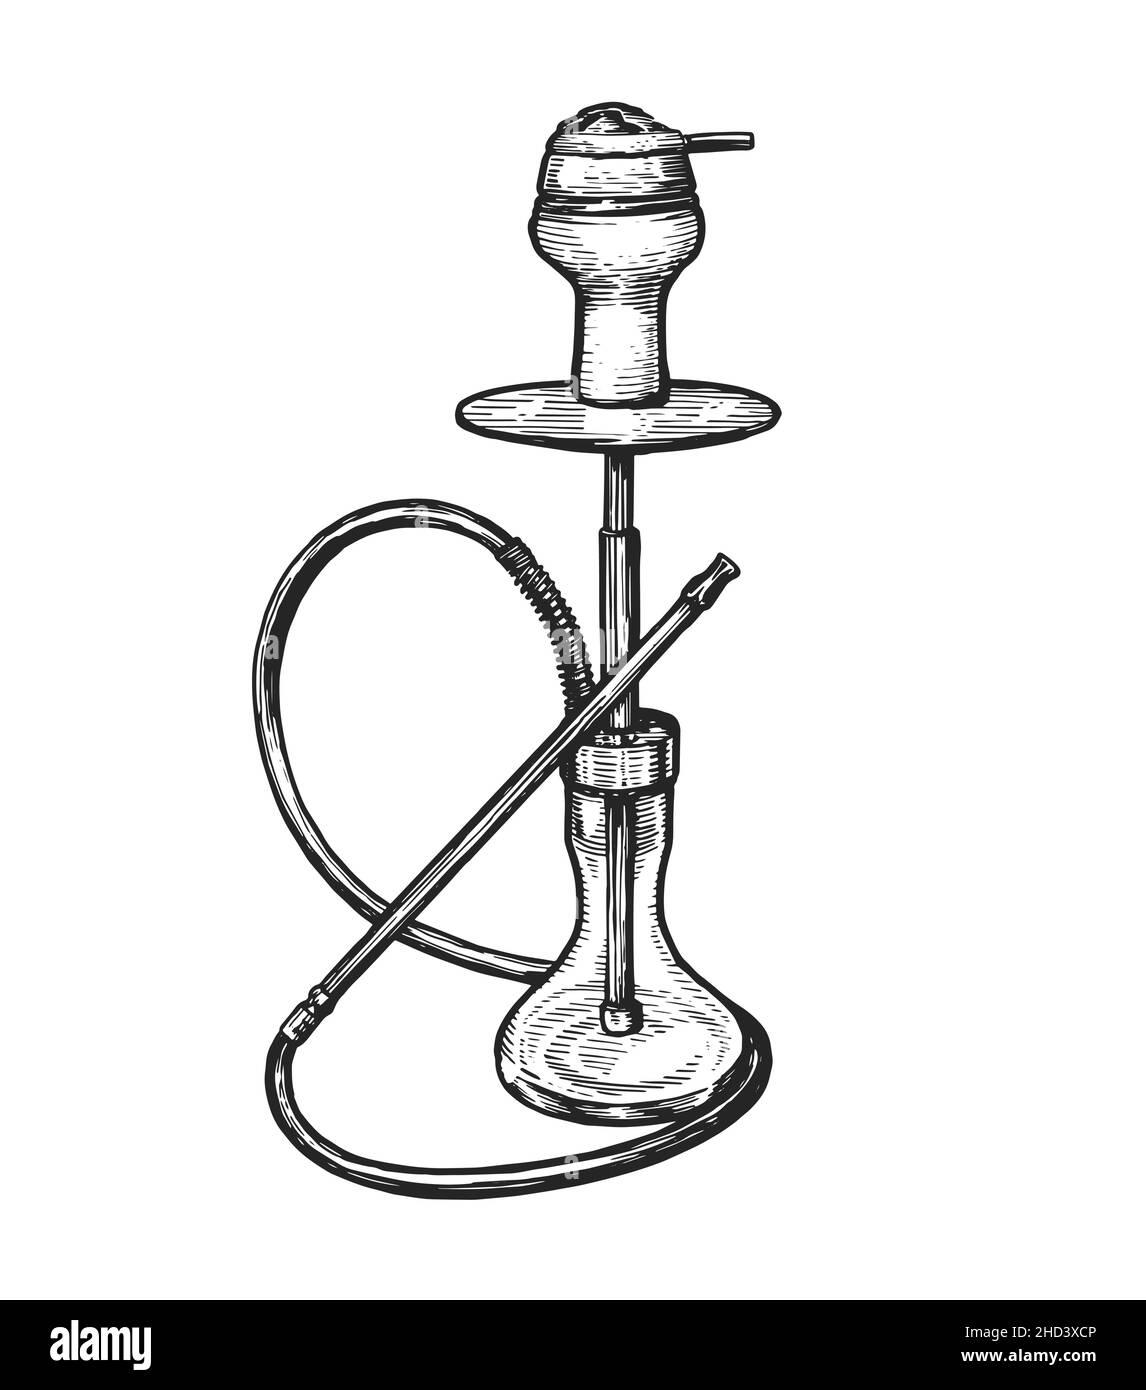 Esquisse du narguilé.Shisha, symbole nargile.Instrument pour vaporiser et fumer du tabac aromatisé Illustration de Vecteur